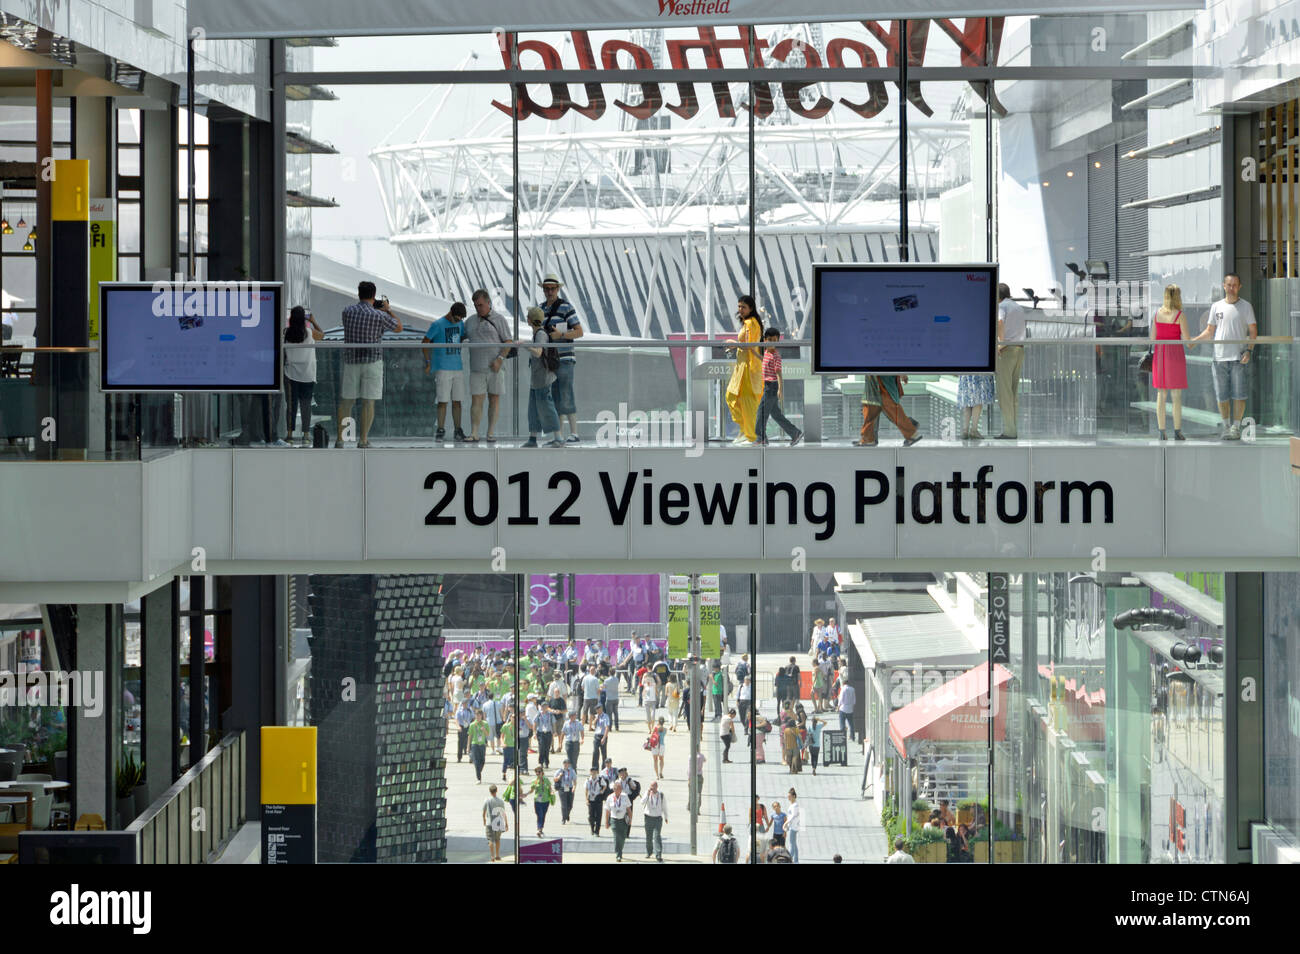 Gli acquirenti possono fare acquisti sulla piattaforma panoramica interna 2012 ore su 24, 7 giorni su 7 all'interno del centro commerciale Westfield Vista sul principale stadio olimpico di Londra Stratford Newham Inghilterra Foto Stock